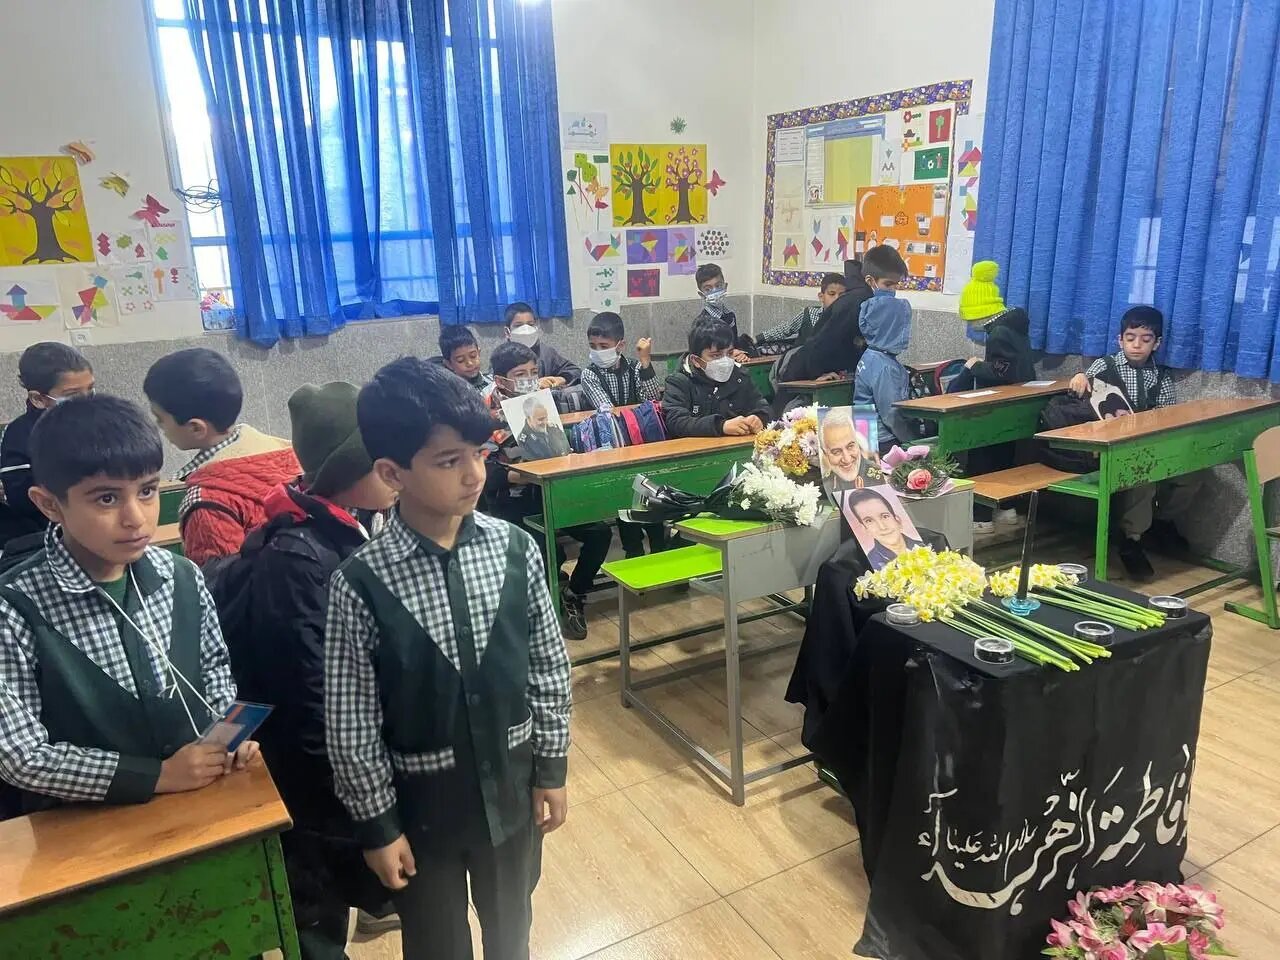 تصویری دردناک از یک کلاس درس پسرانه در کرمان/ عکس